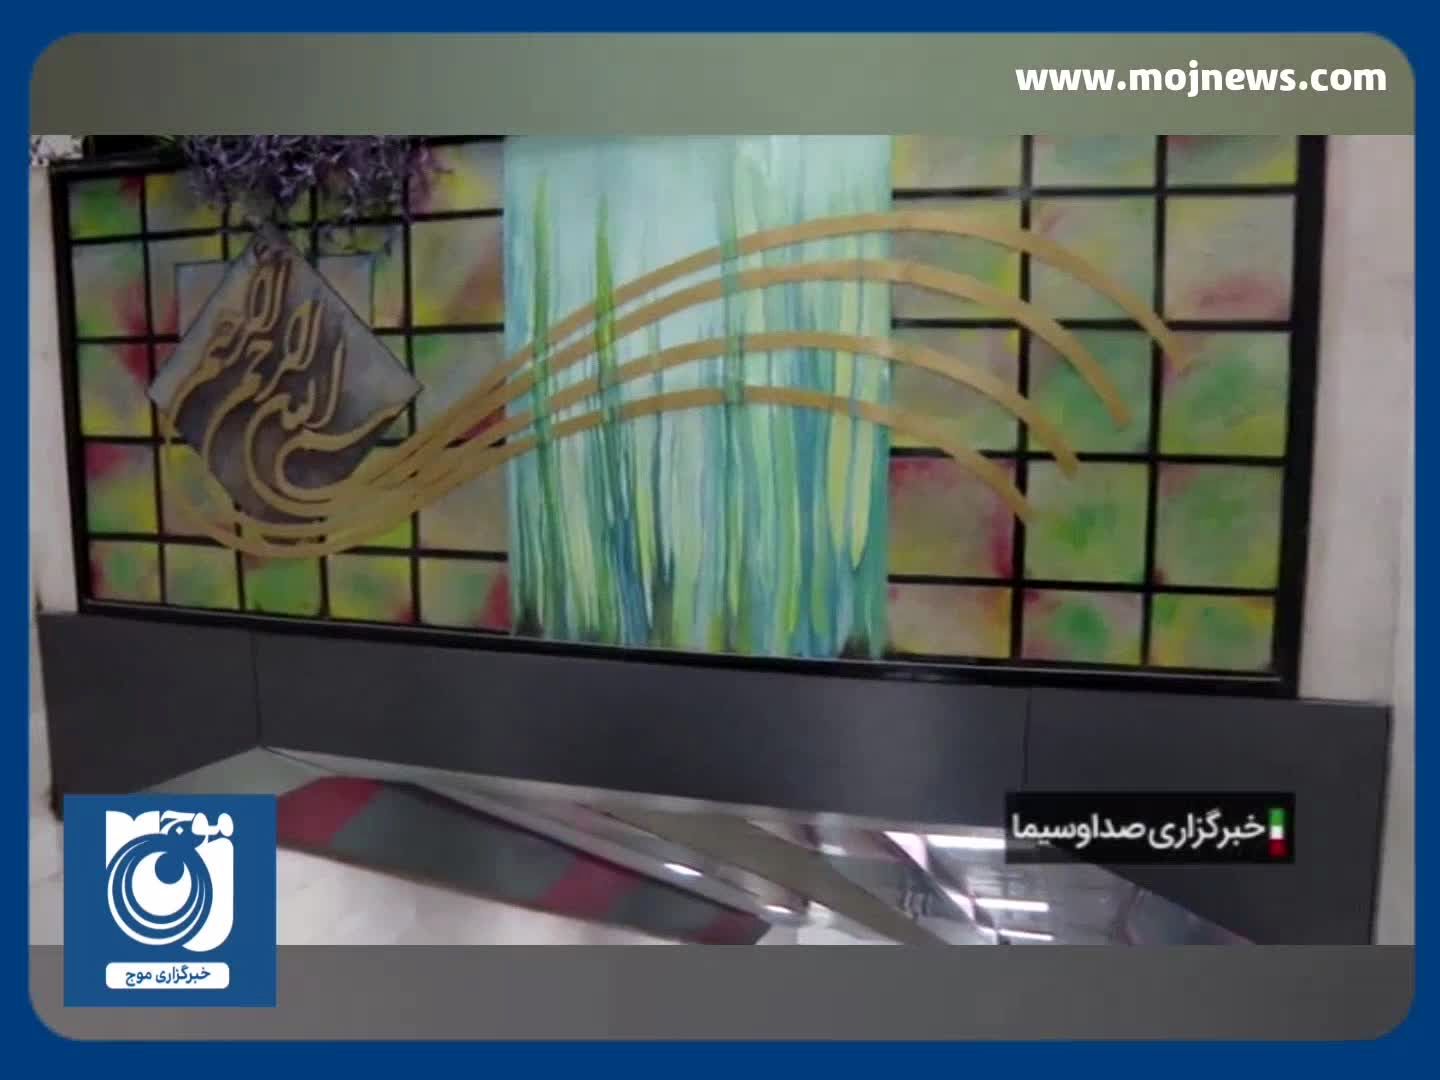 سه ایستگاه خط ۶ مترو تهران آماده بهره برداری + فیلم